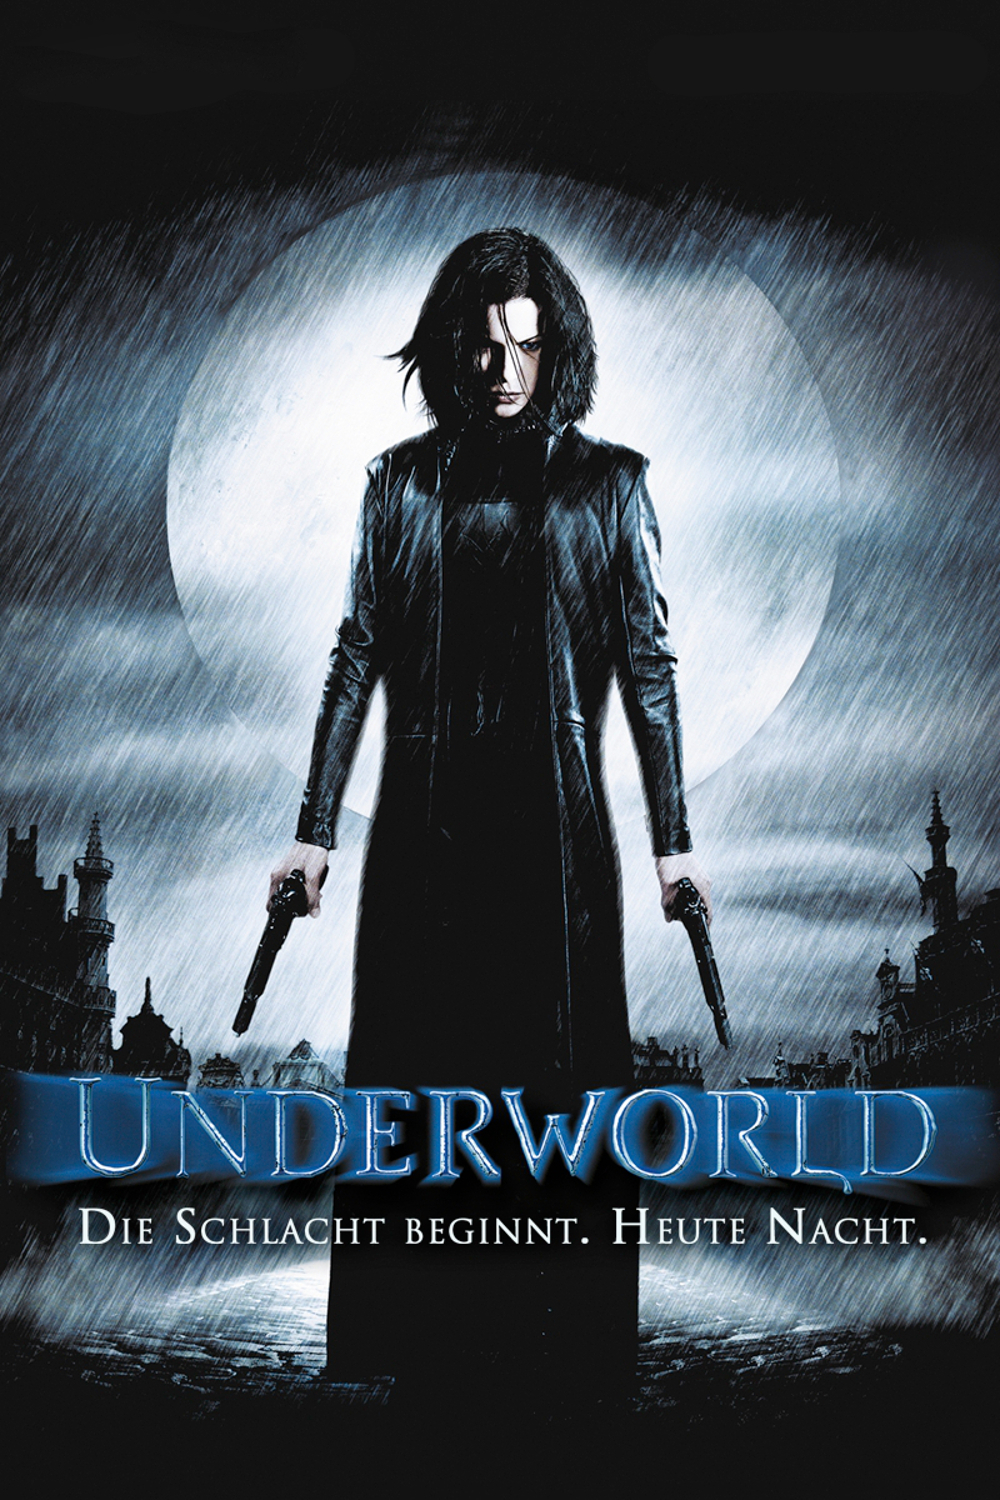 Plakat von "Underworld"